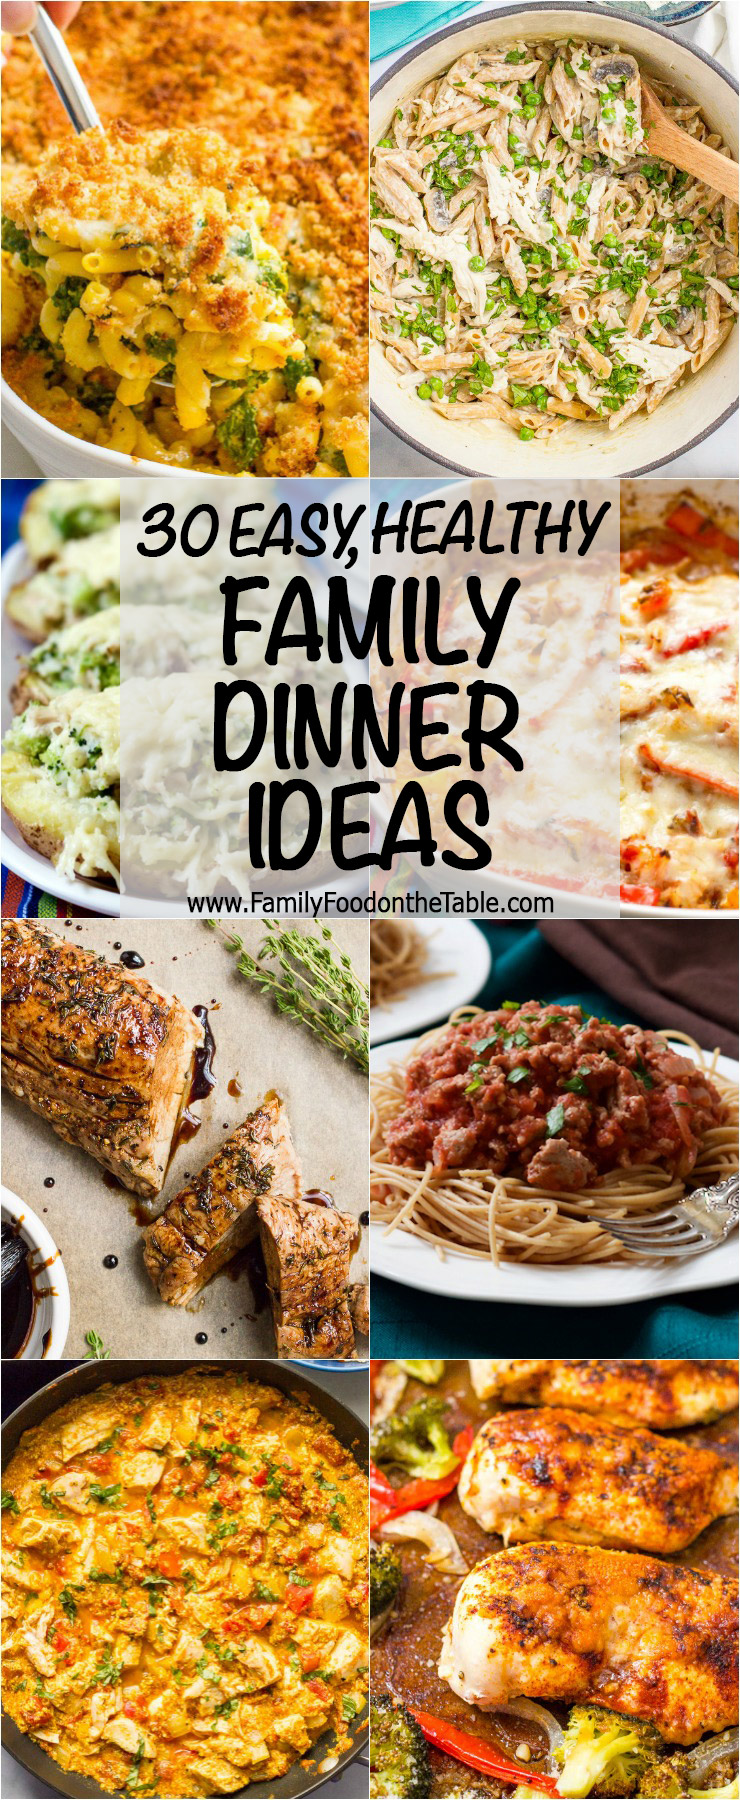 good dinner ideas for family